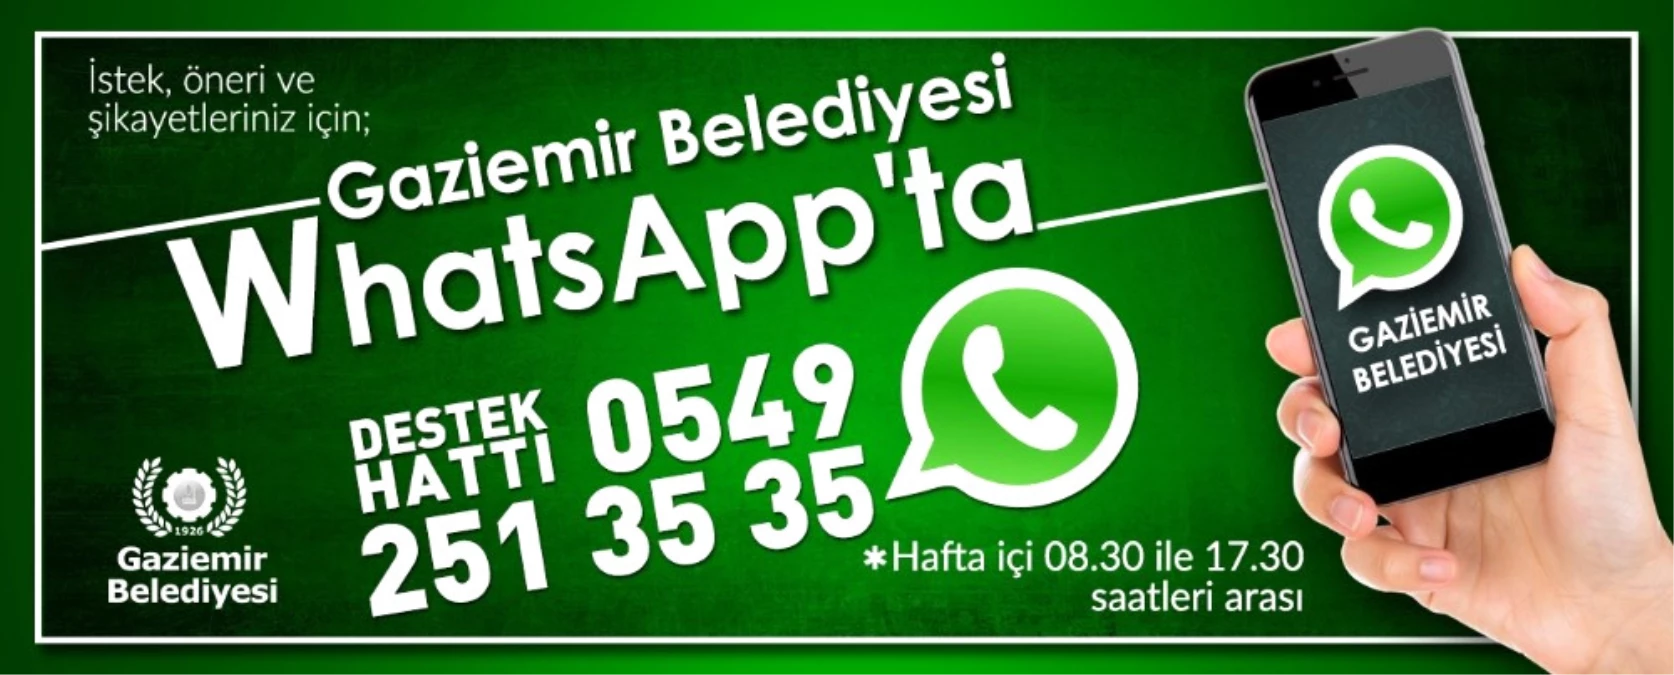 Gaziemir Belediyesi Whatsapp\'ta